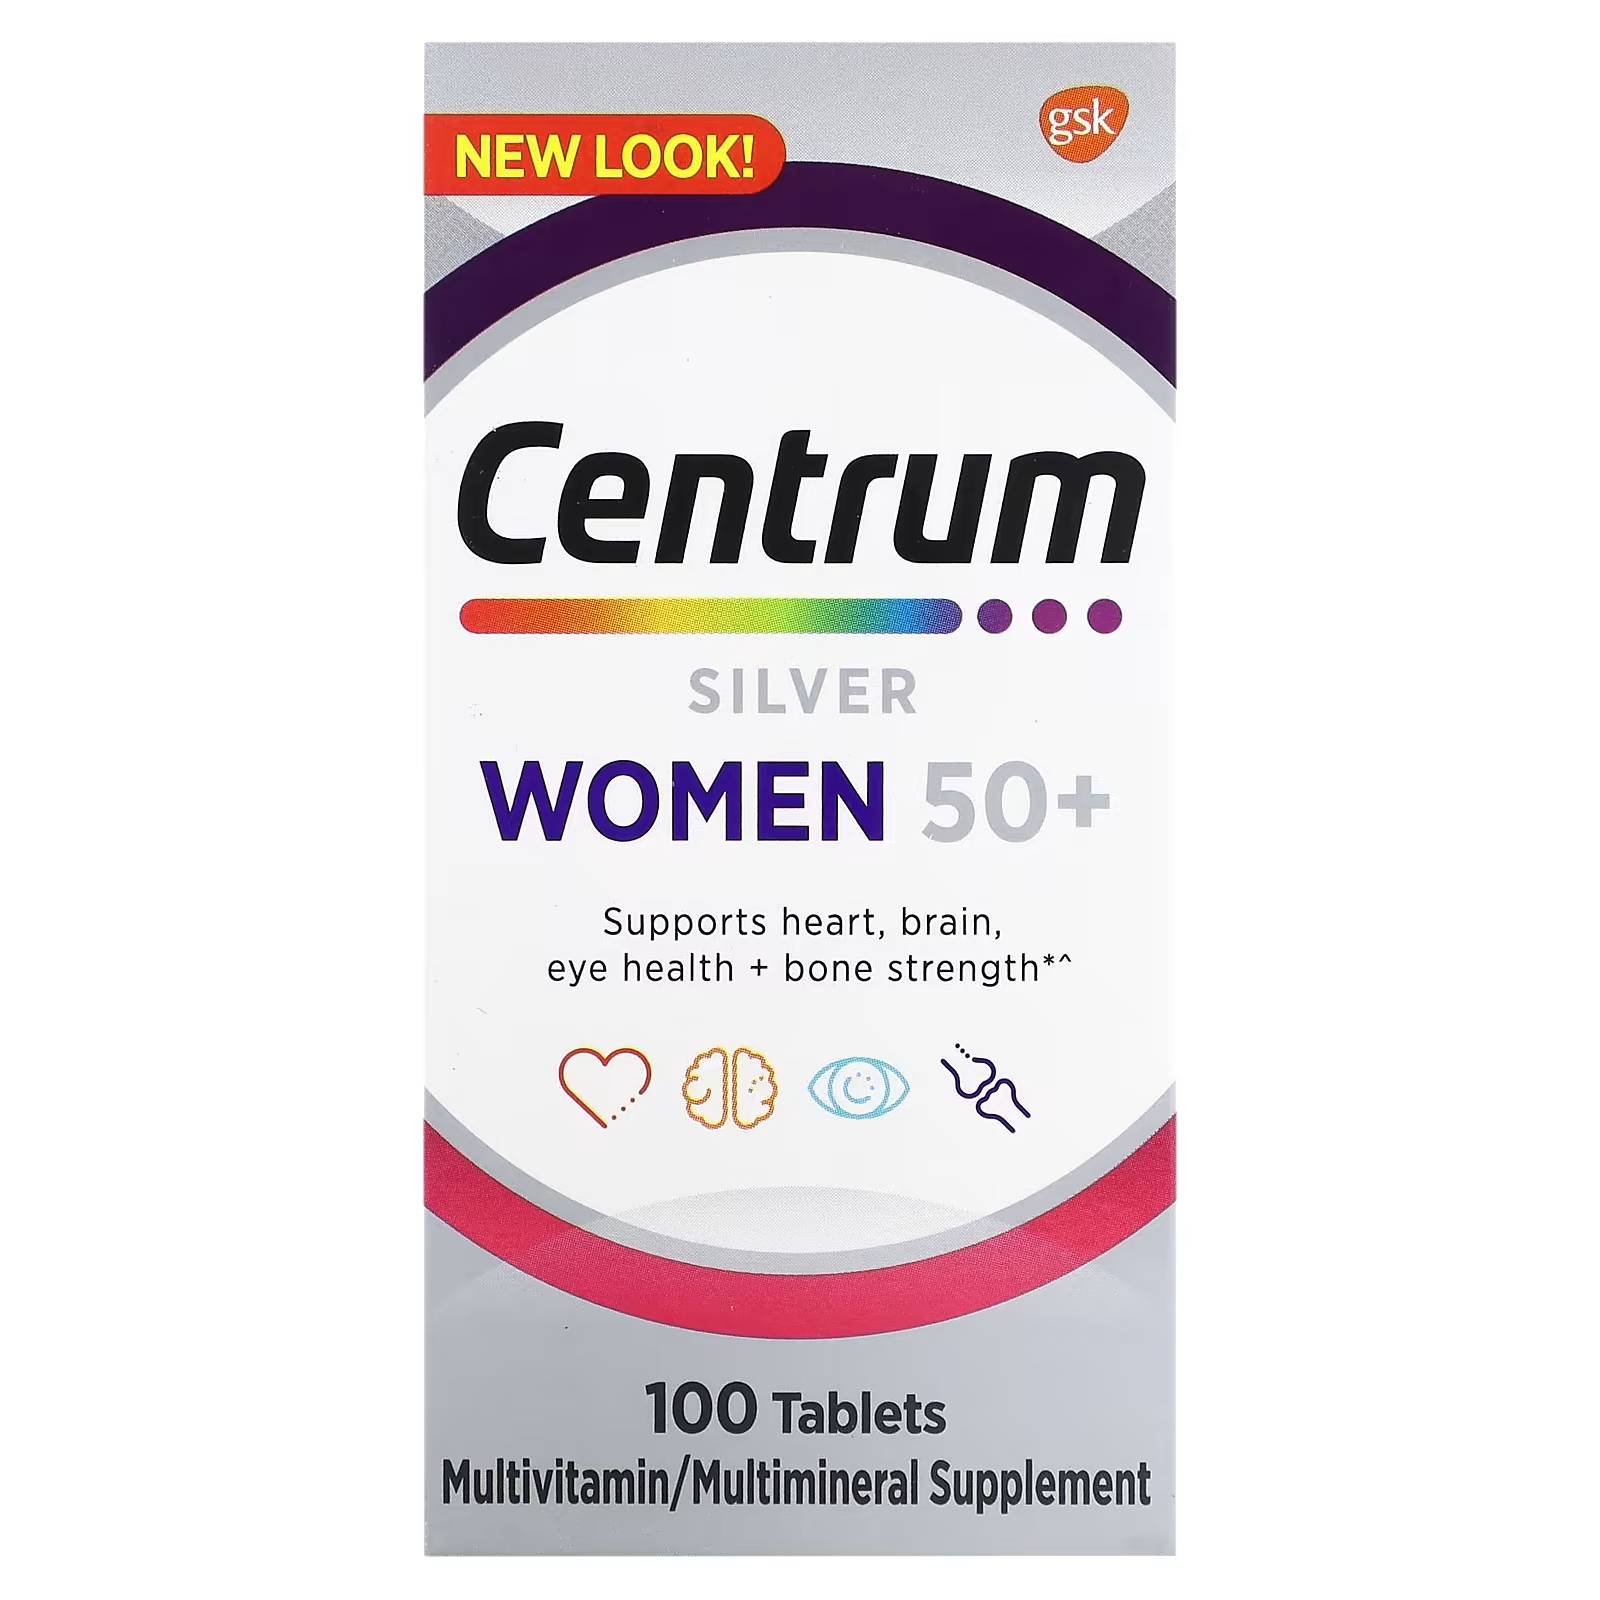 Мультивитаминная добавка Centrum Silver для женщин 50+, 100 таблеток мультивитаминная добавка centrum silver для мужчин 50 100 таблеток